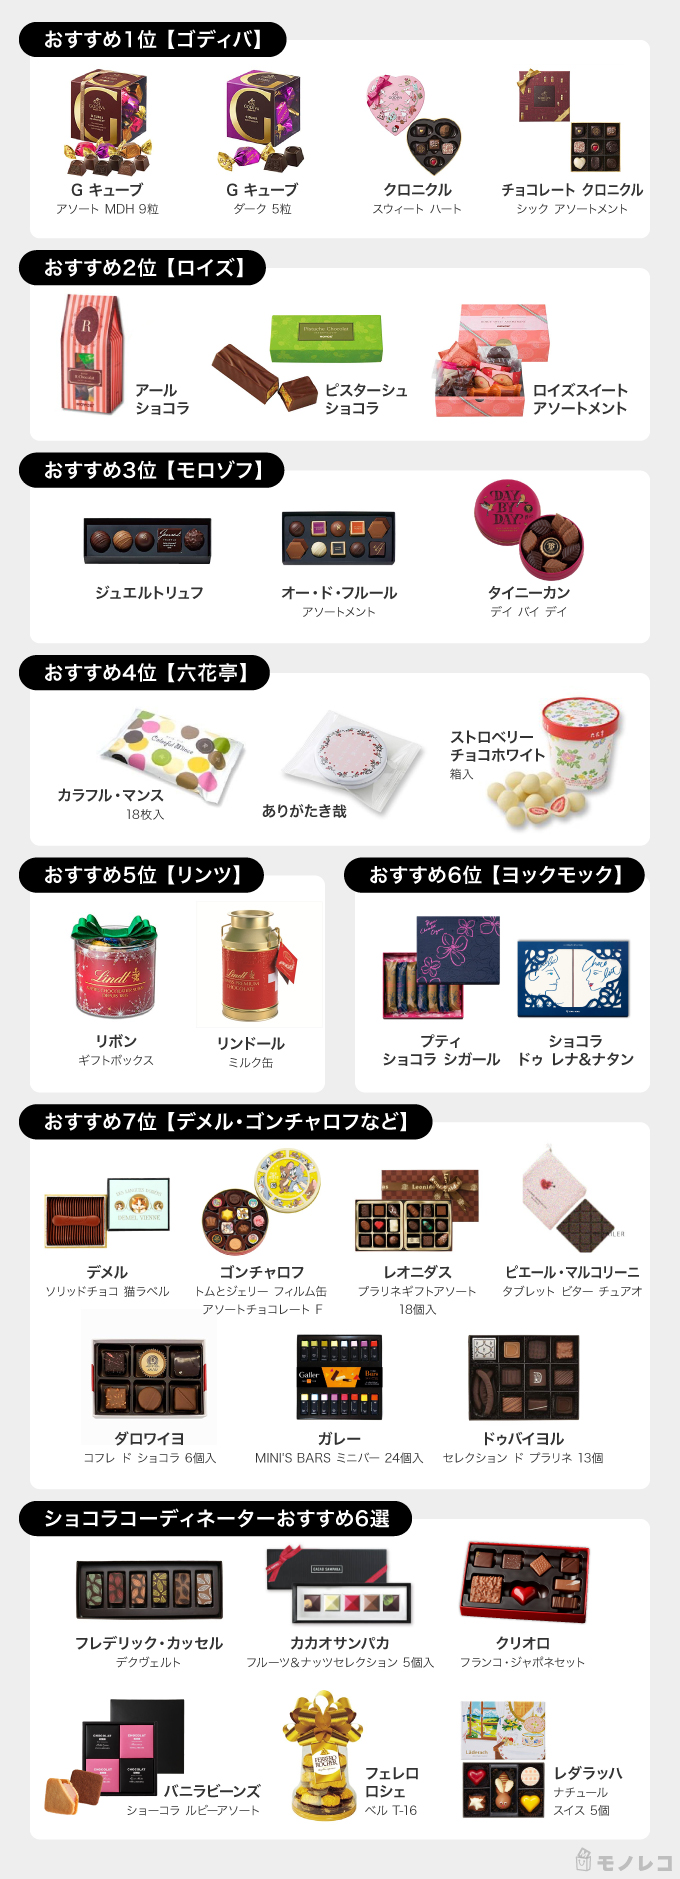 バレンタインチョコレートおすすめ選 人気ブランドランキング付き モノレコ By Ameba